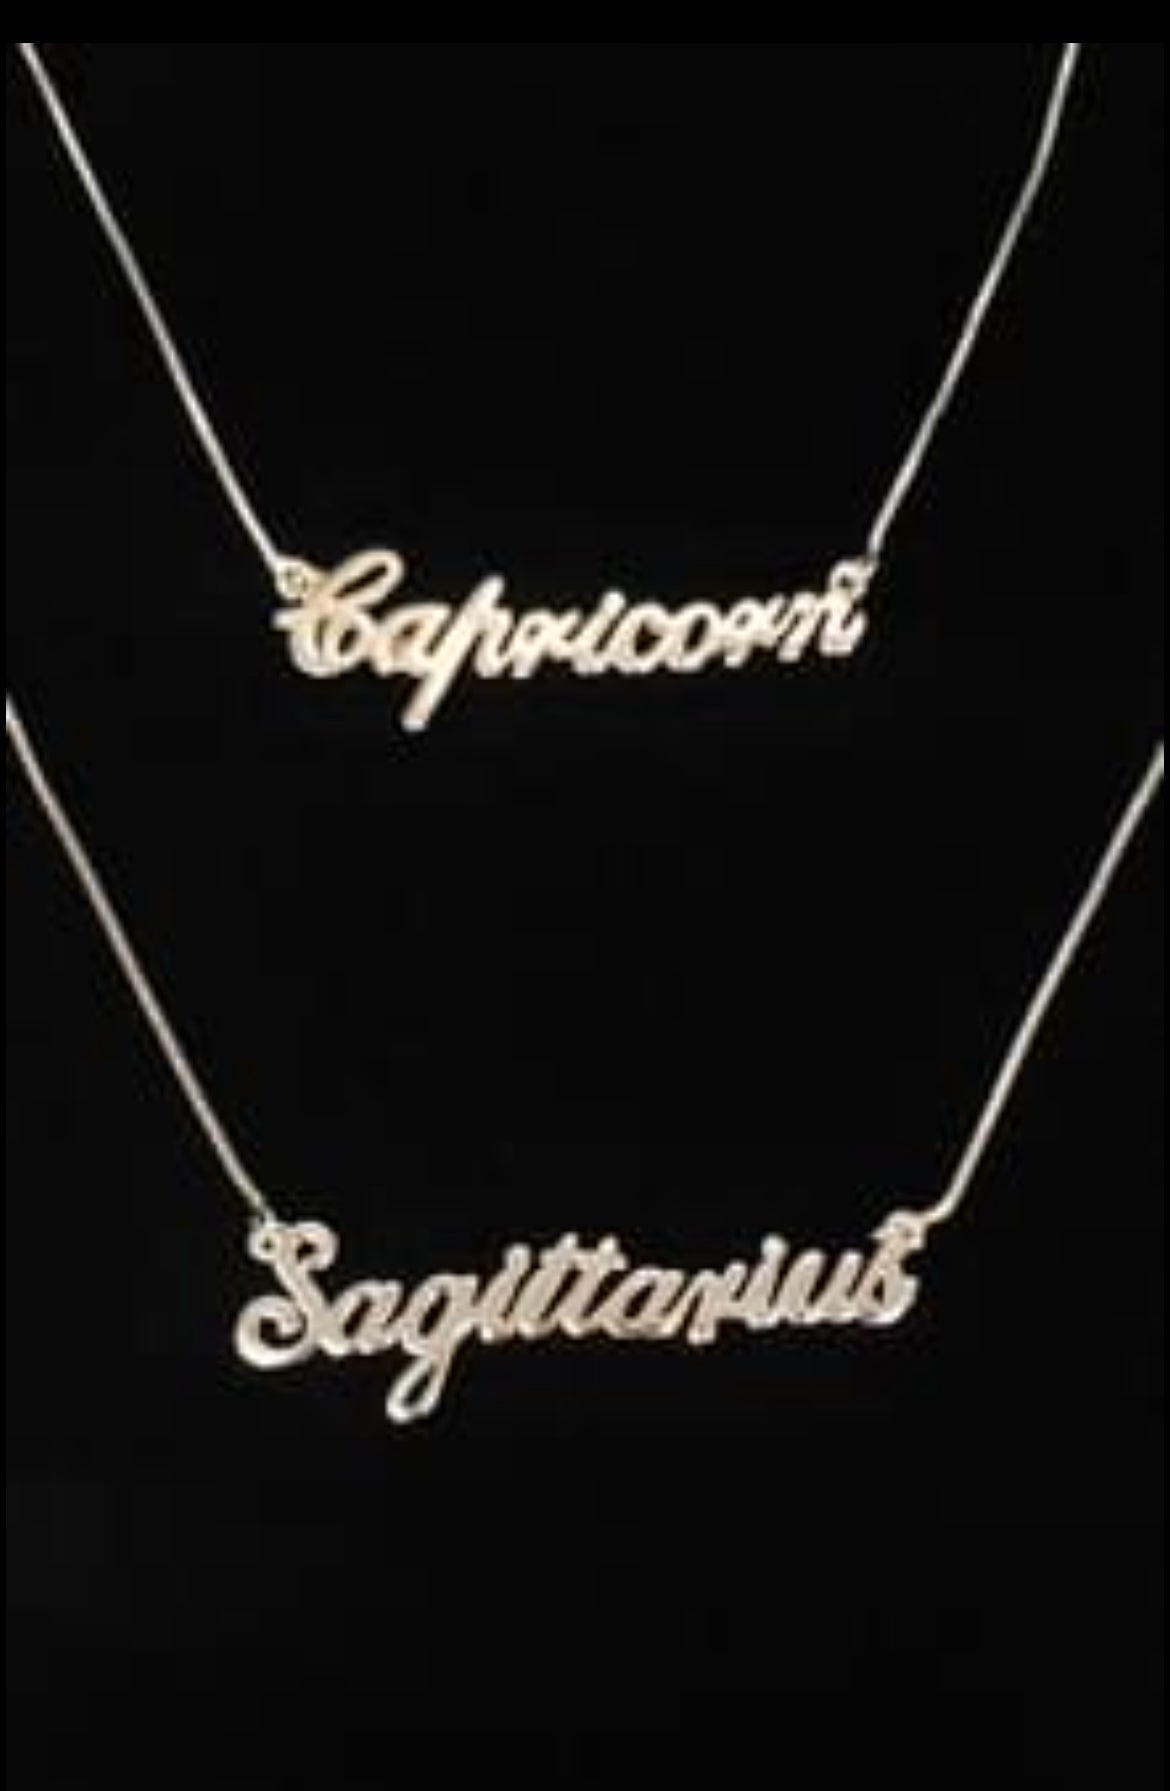 Capricorn or Sagittarius necklace